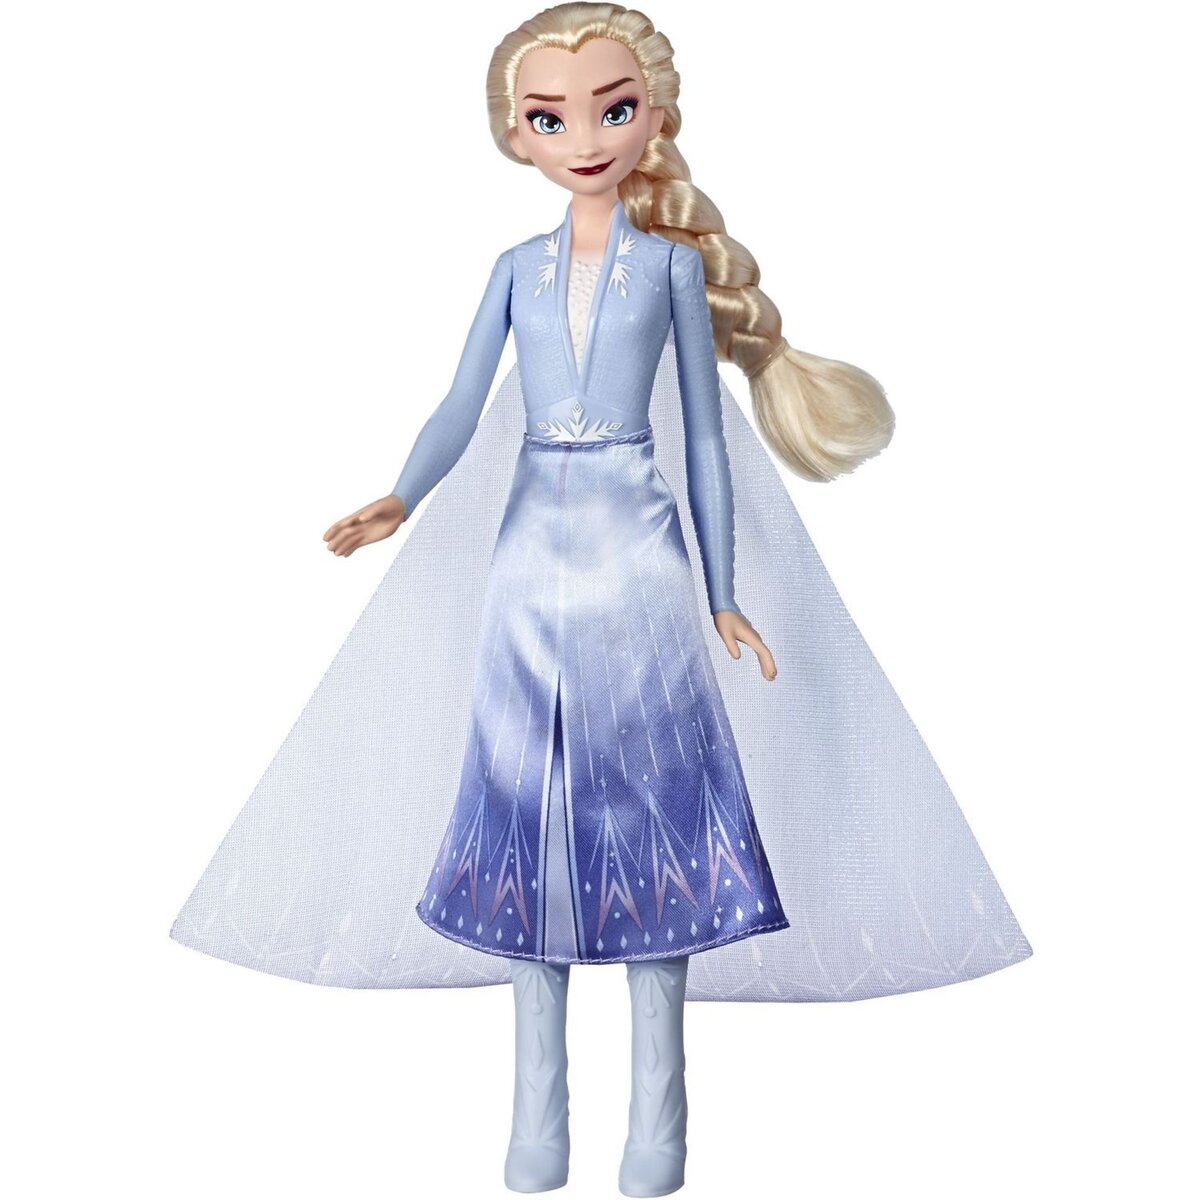 HASBRO Poupée Elsa avec robe lumineuse - La reine des neiges 2